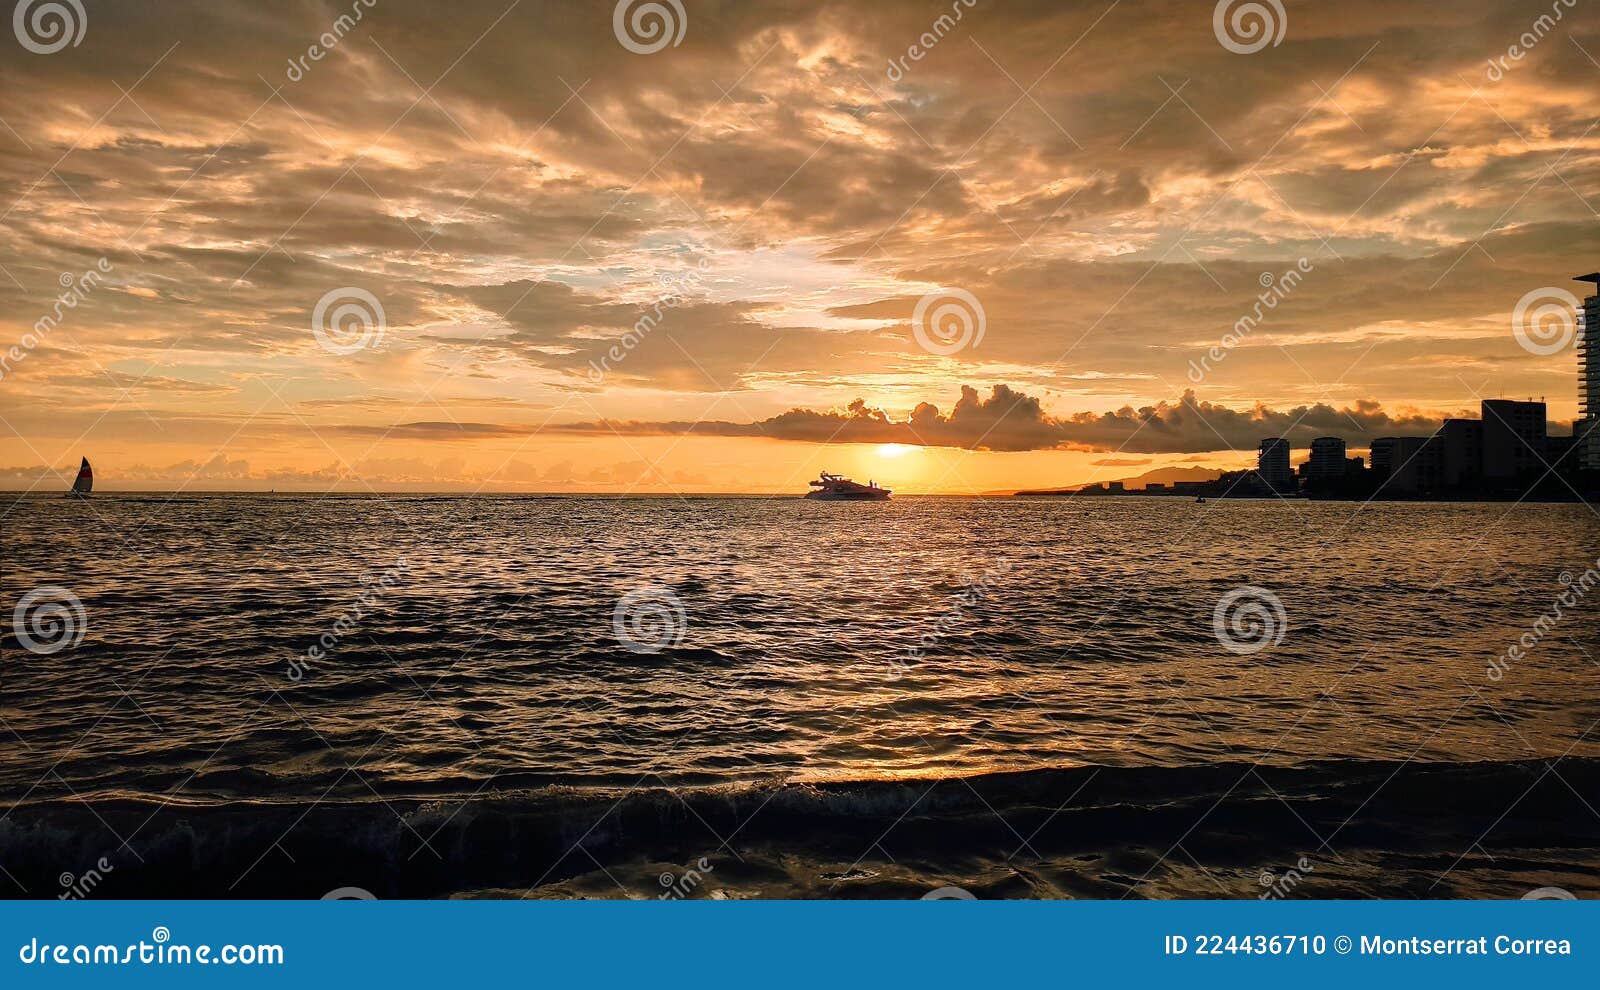 summer sunset at puerto vallarta mÃ©xico